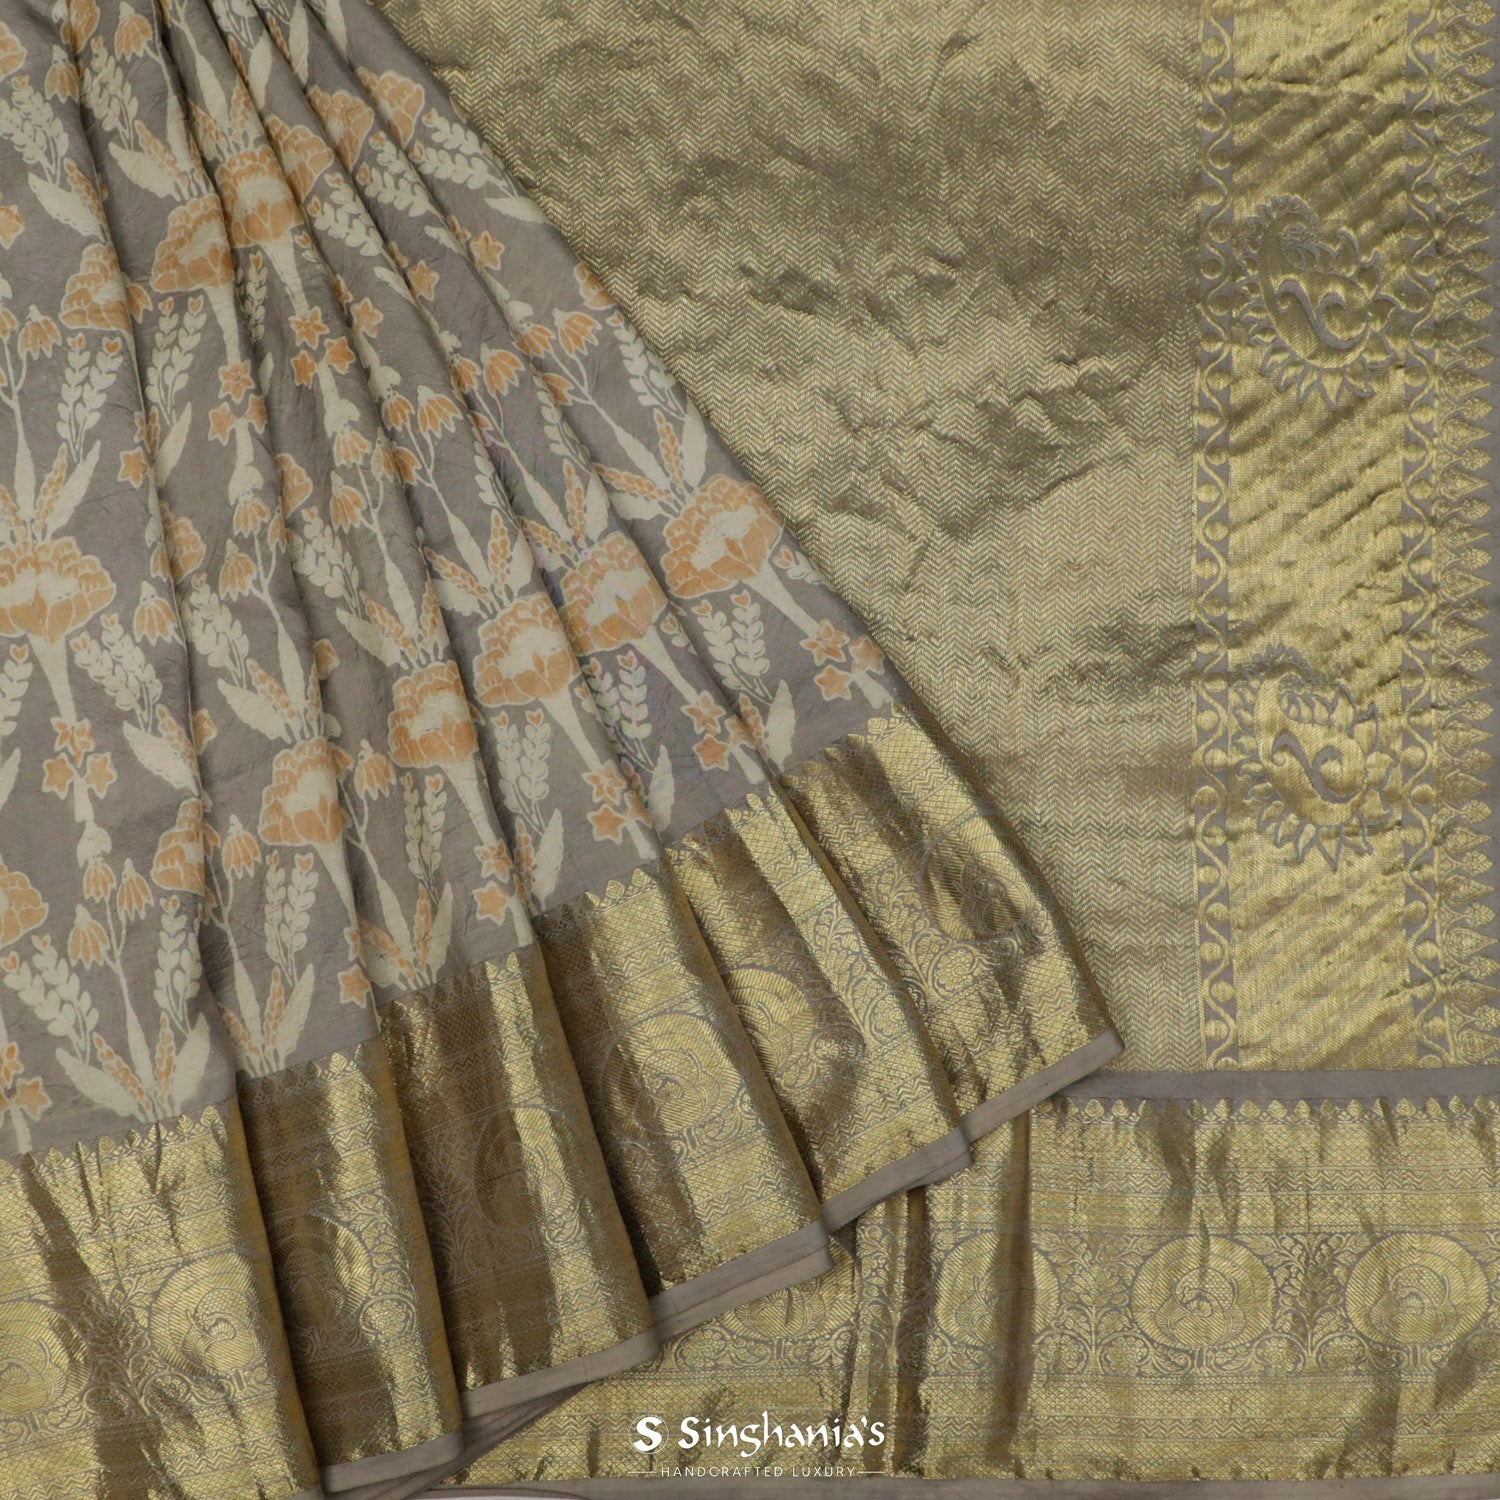 Misty Gray Printed Kanjivaram Saree With Ajrakh Pattern